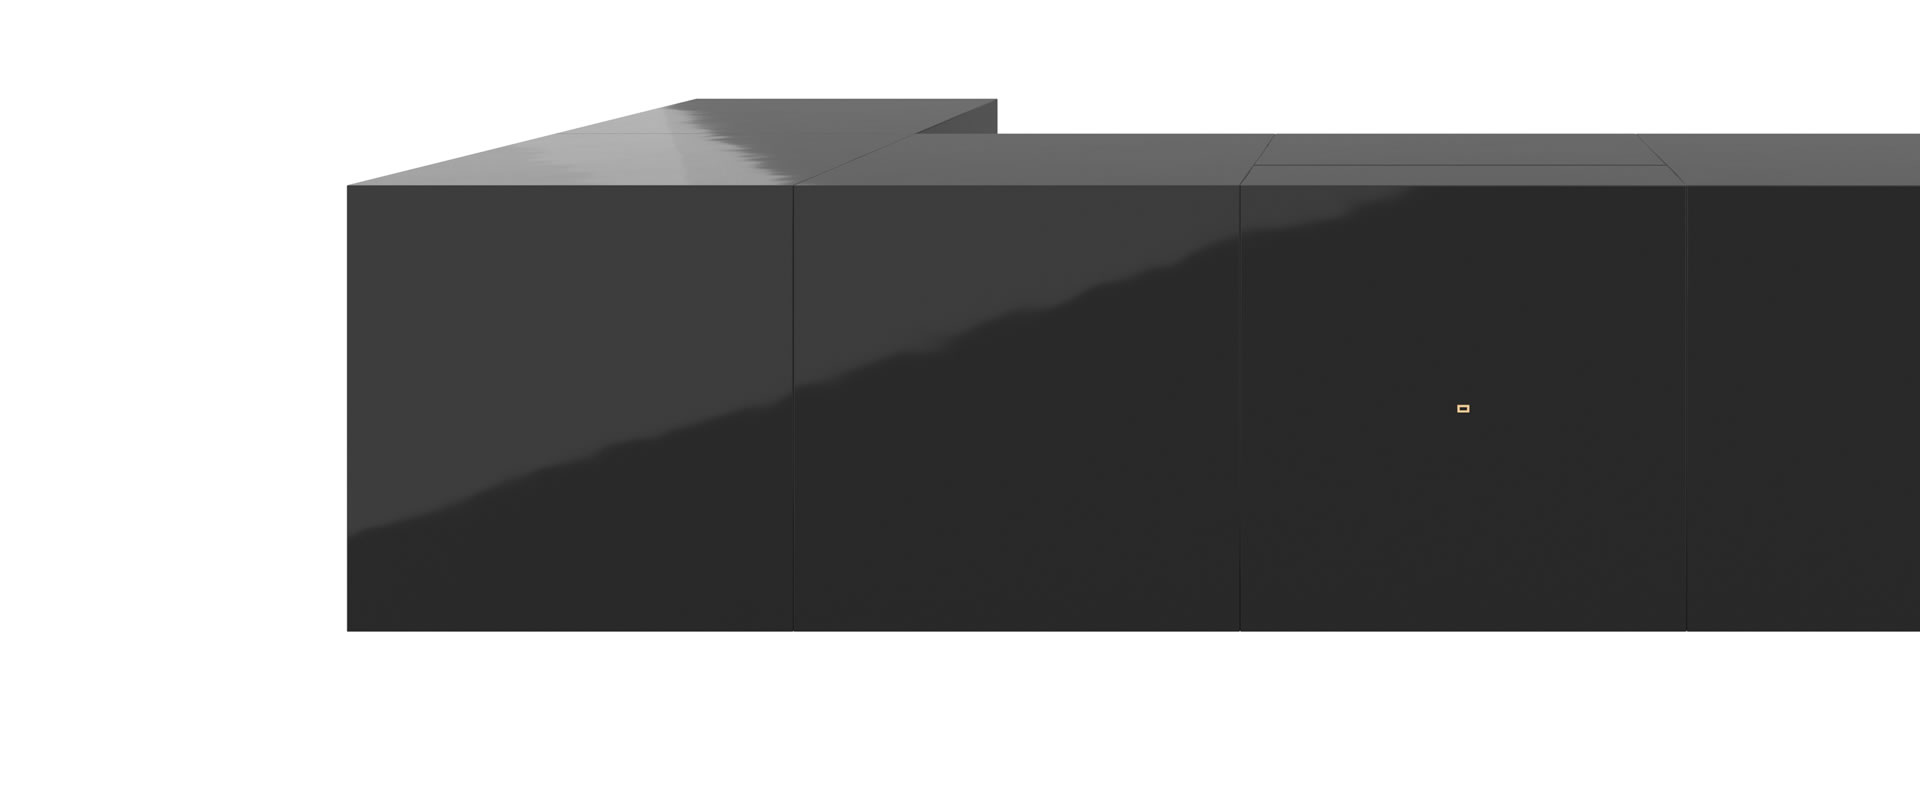 FELIX SCHWAKE DESK III piano lacquer black corner desk closed cube elemente